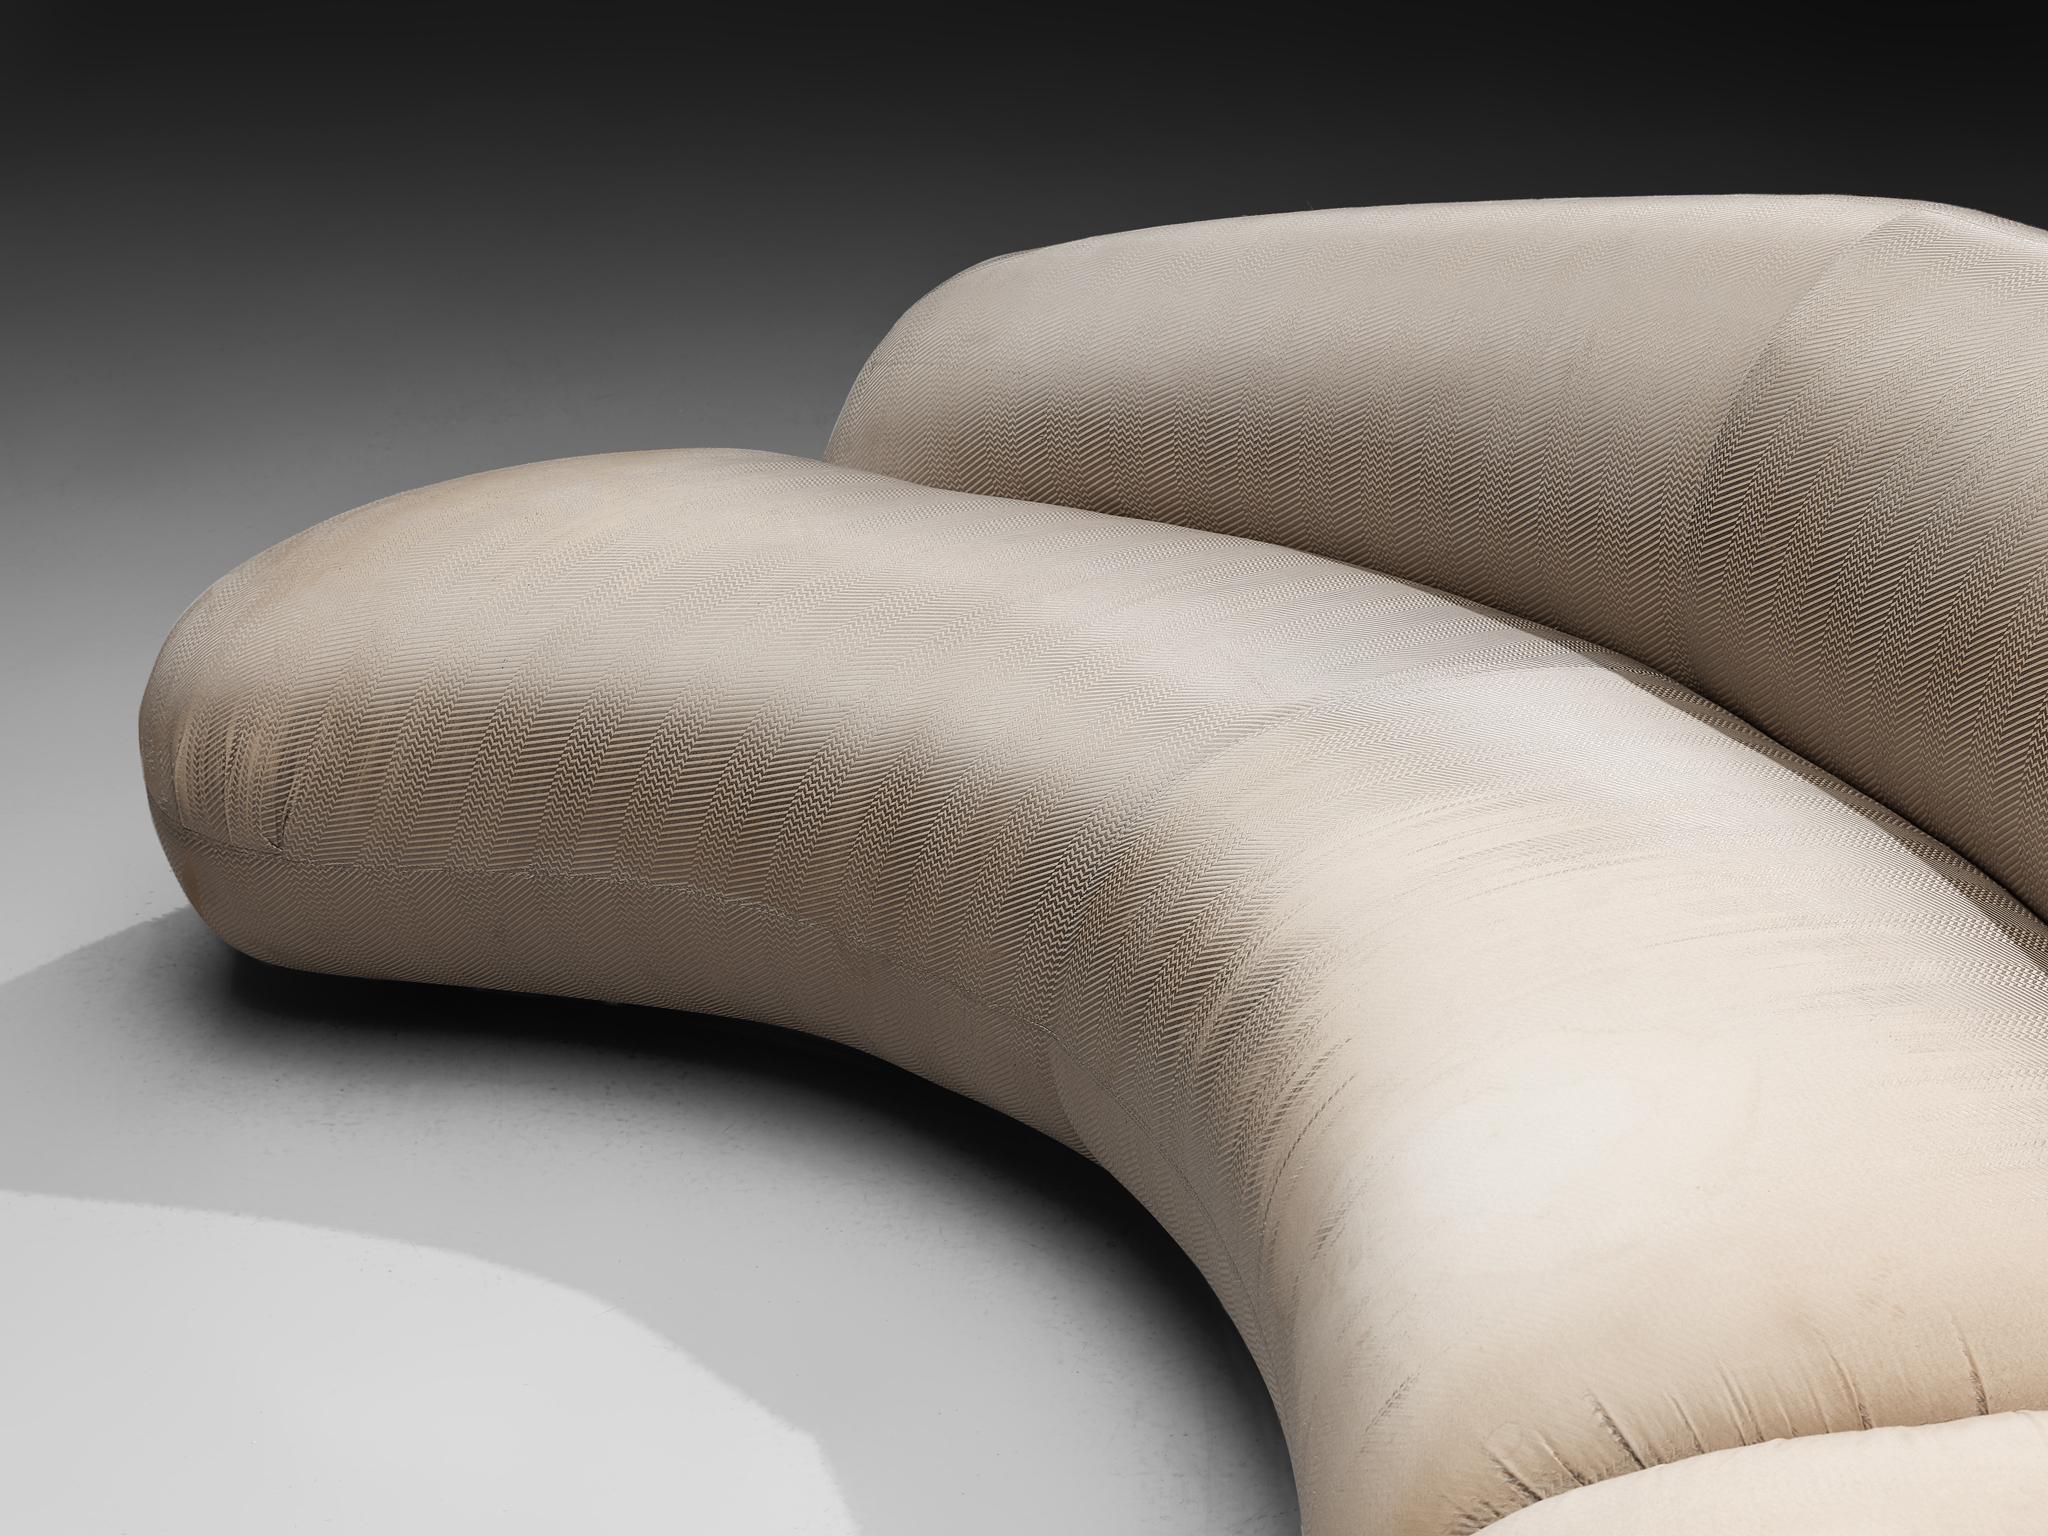 Fabric Vladimir Kagan Biomorphic Sofa in Eggshell White Upholstery